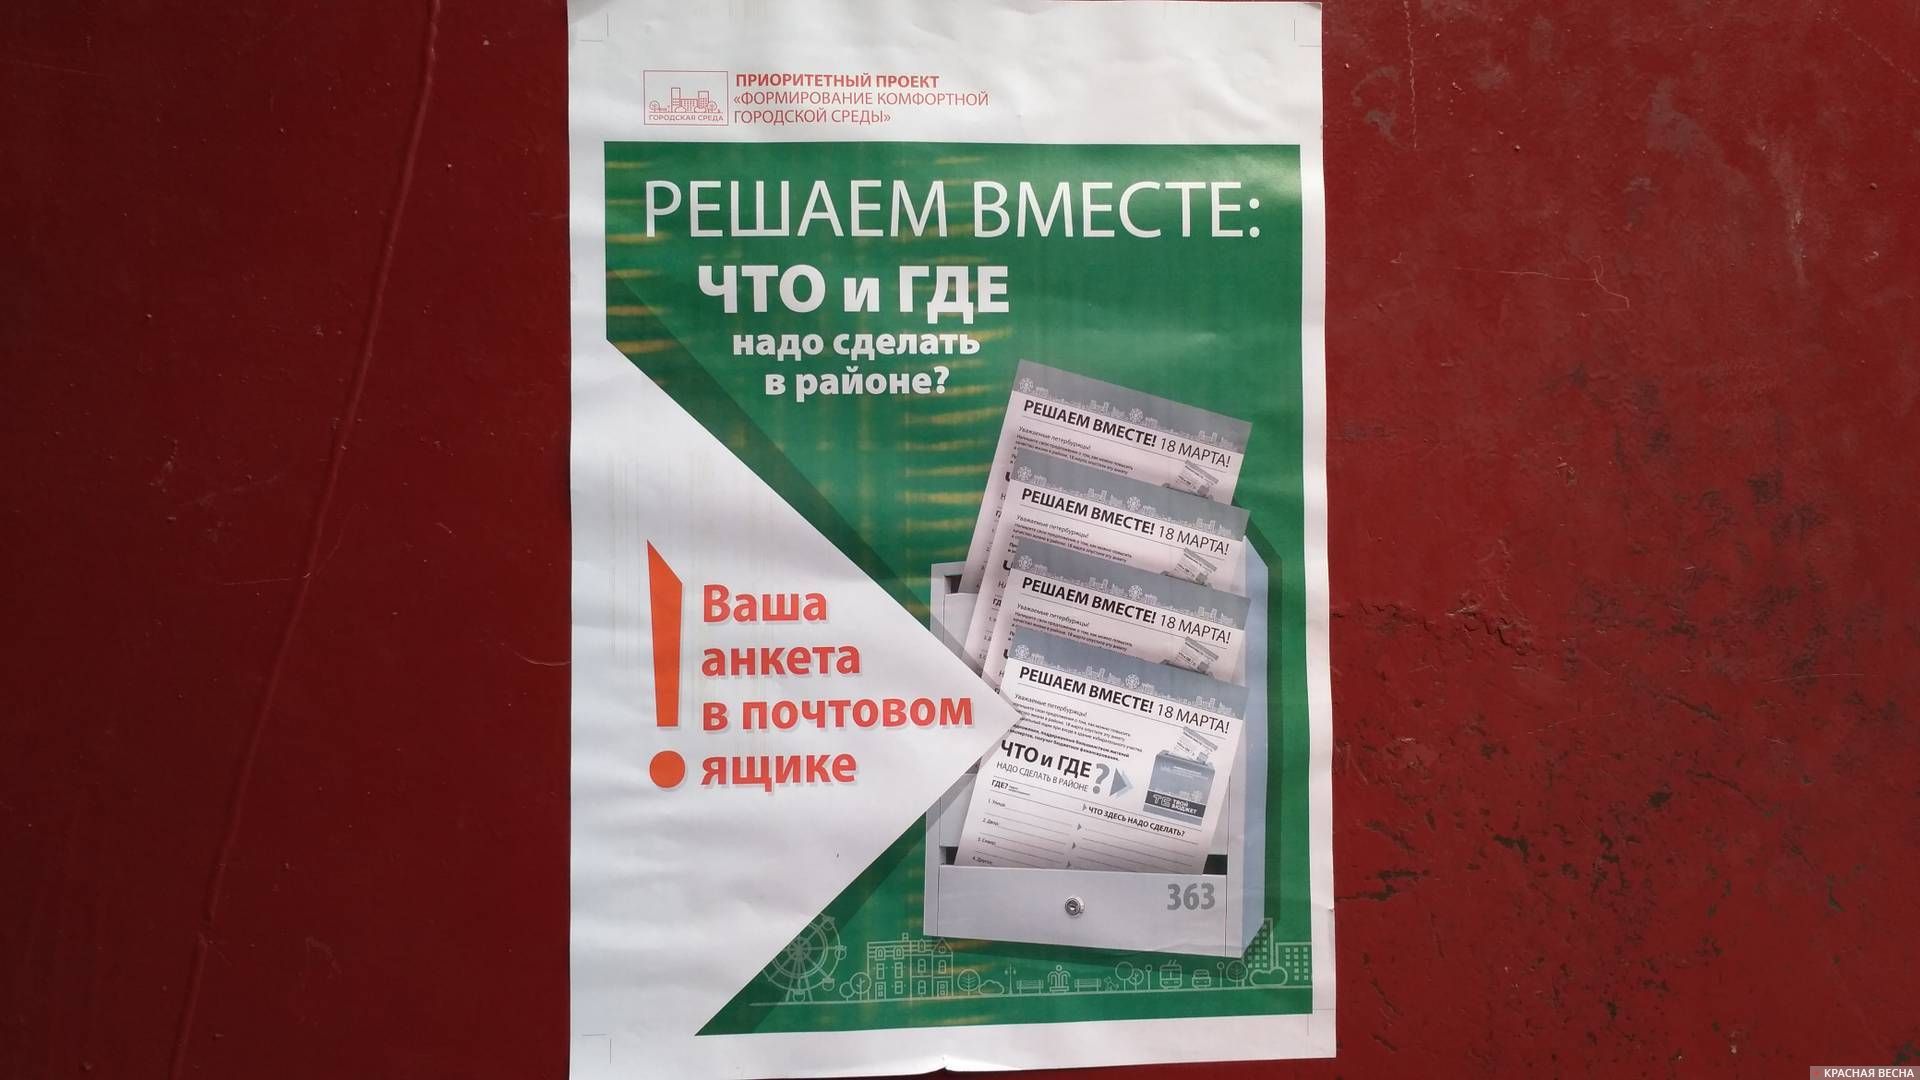 Объявление об анкетах «Решаем вместе», принимаемых на избирательных участках Петербурга в день выборов (c) ИА Красная Весна